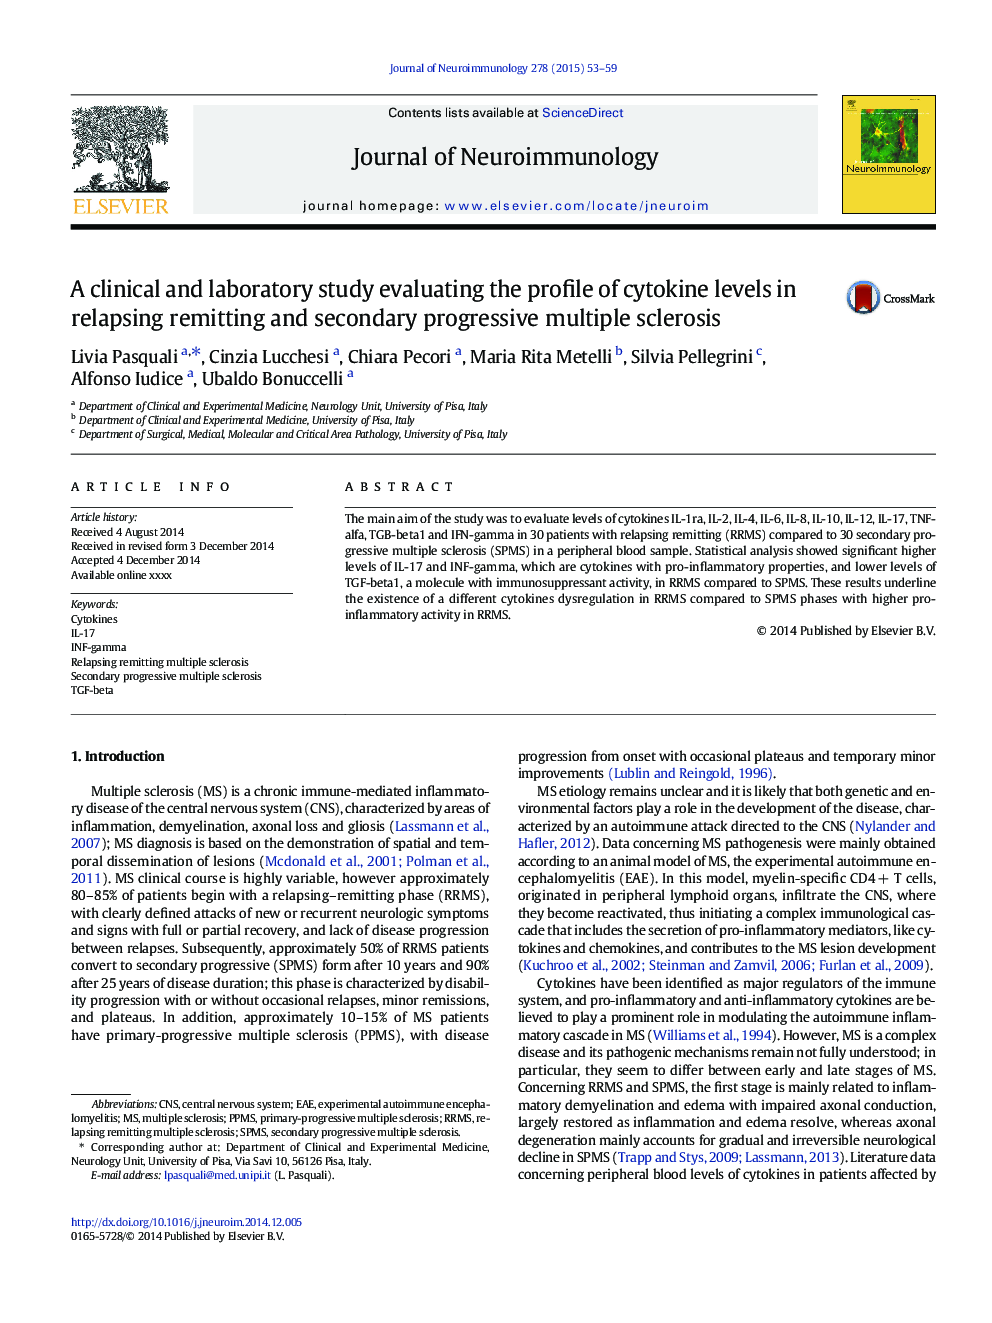 یک مطالعه بالینی و آزمایشگاهی با بررسی مشخصات سطح سیتوکین در بیماران مبتلا به مولتیپل اسکلروزیس مجدد و ثانویه پیشرفته 